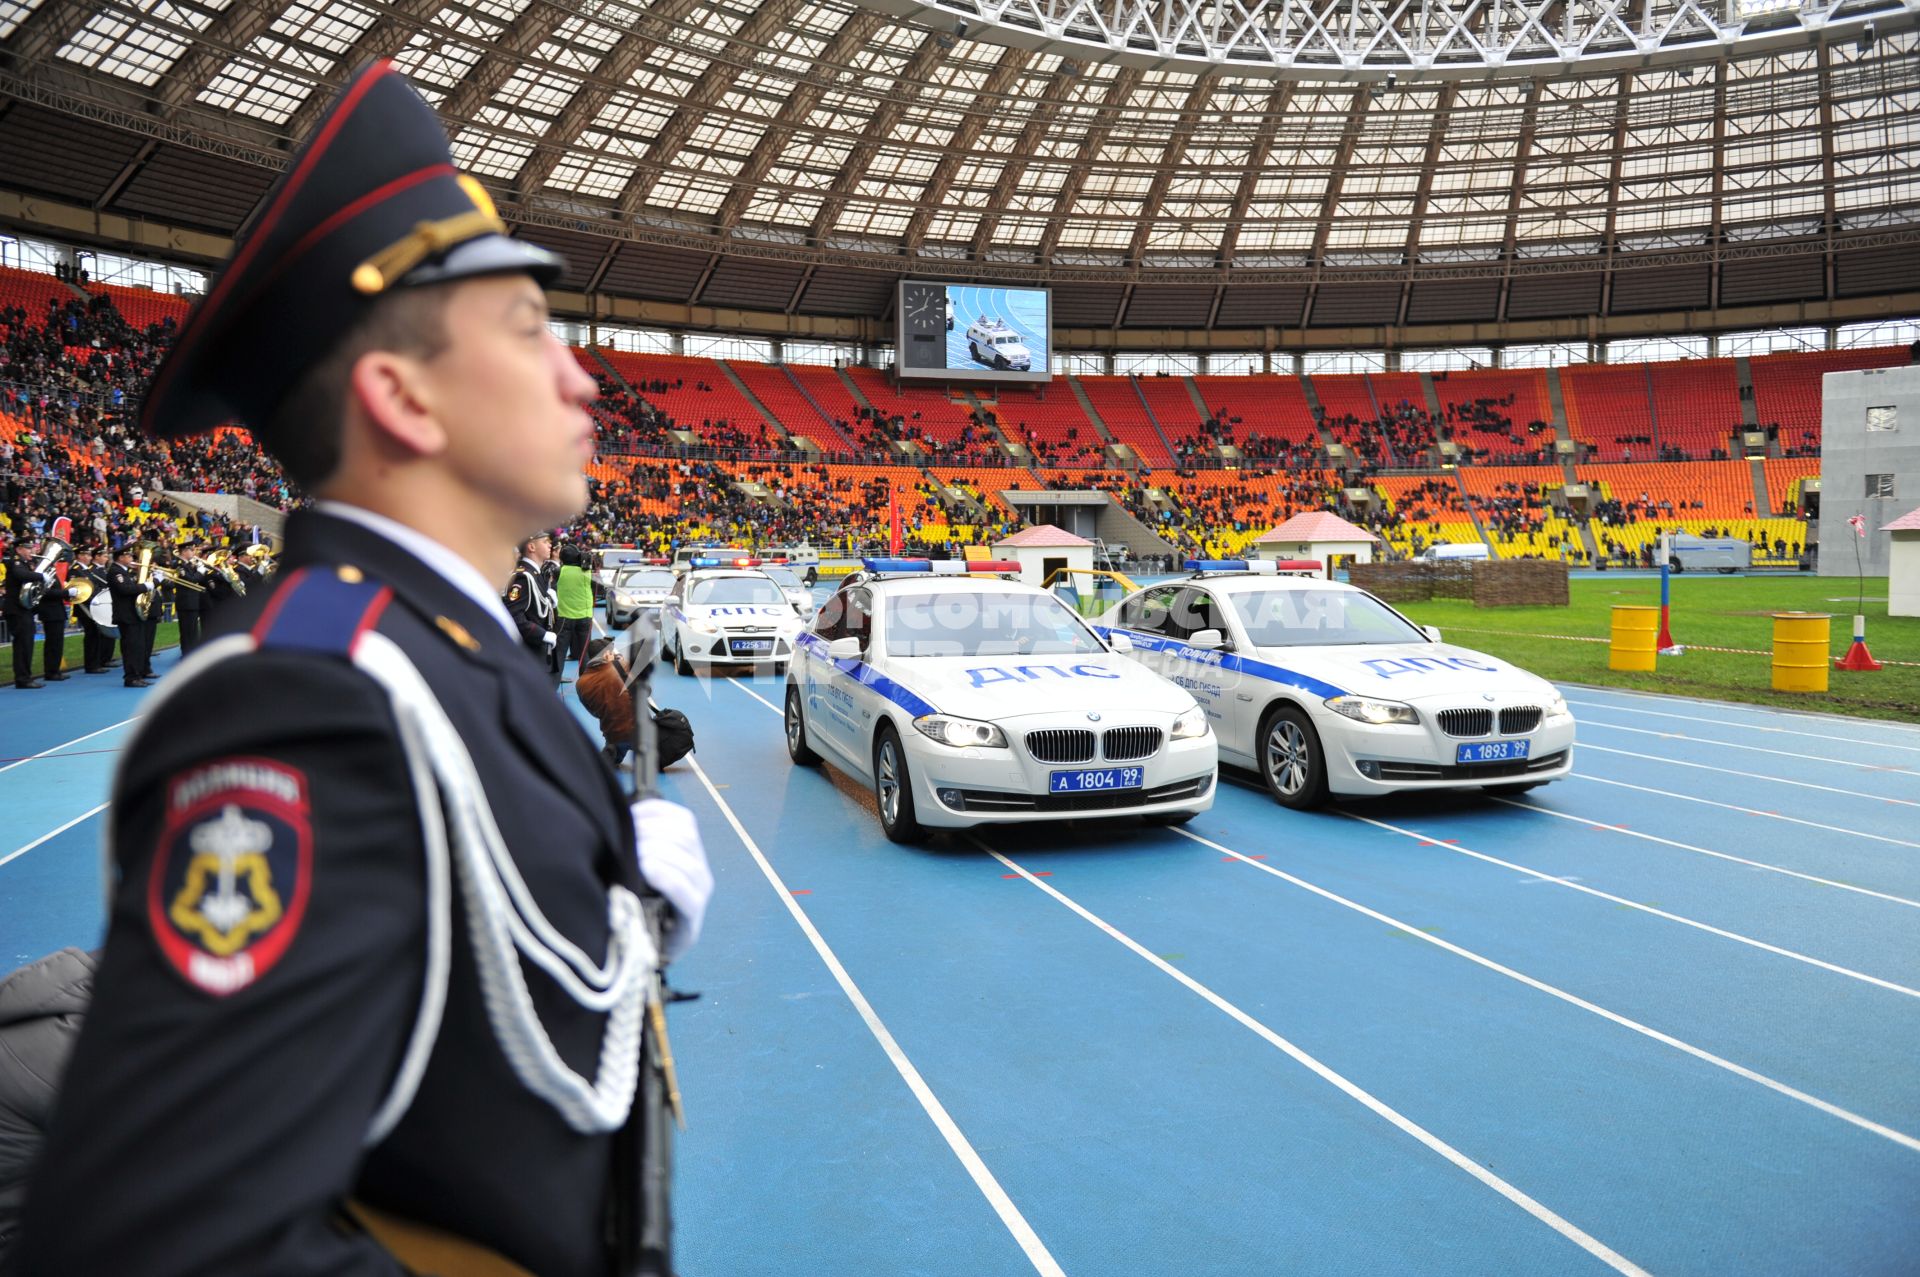 СК `Лужники`.  Спортивный праздник московской полиции. На снимке: показательные выступления сотрудников ДПС.